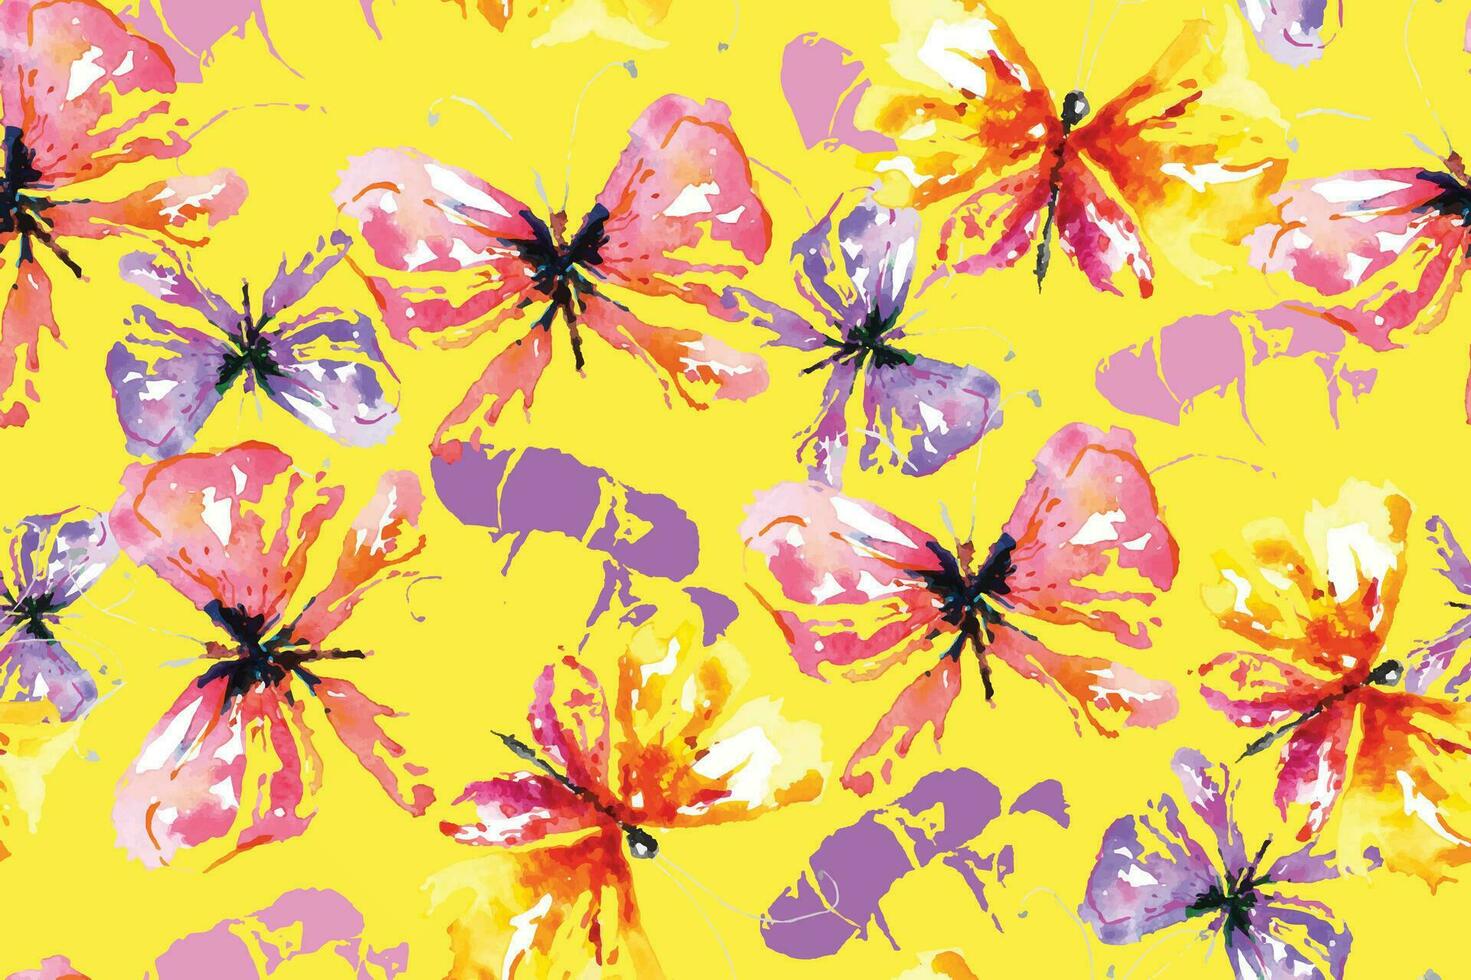 motif harmonieux de papillons peints à l'aquarelle.pour la conception de motifs de tissus colorés et de papier peint.fond abstrait fantaisie.fond d'insectes volants. vecteur